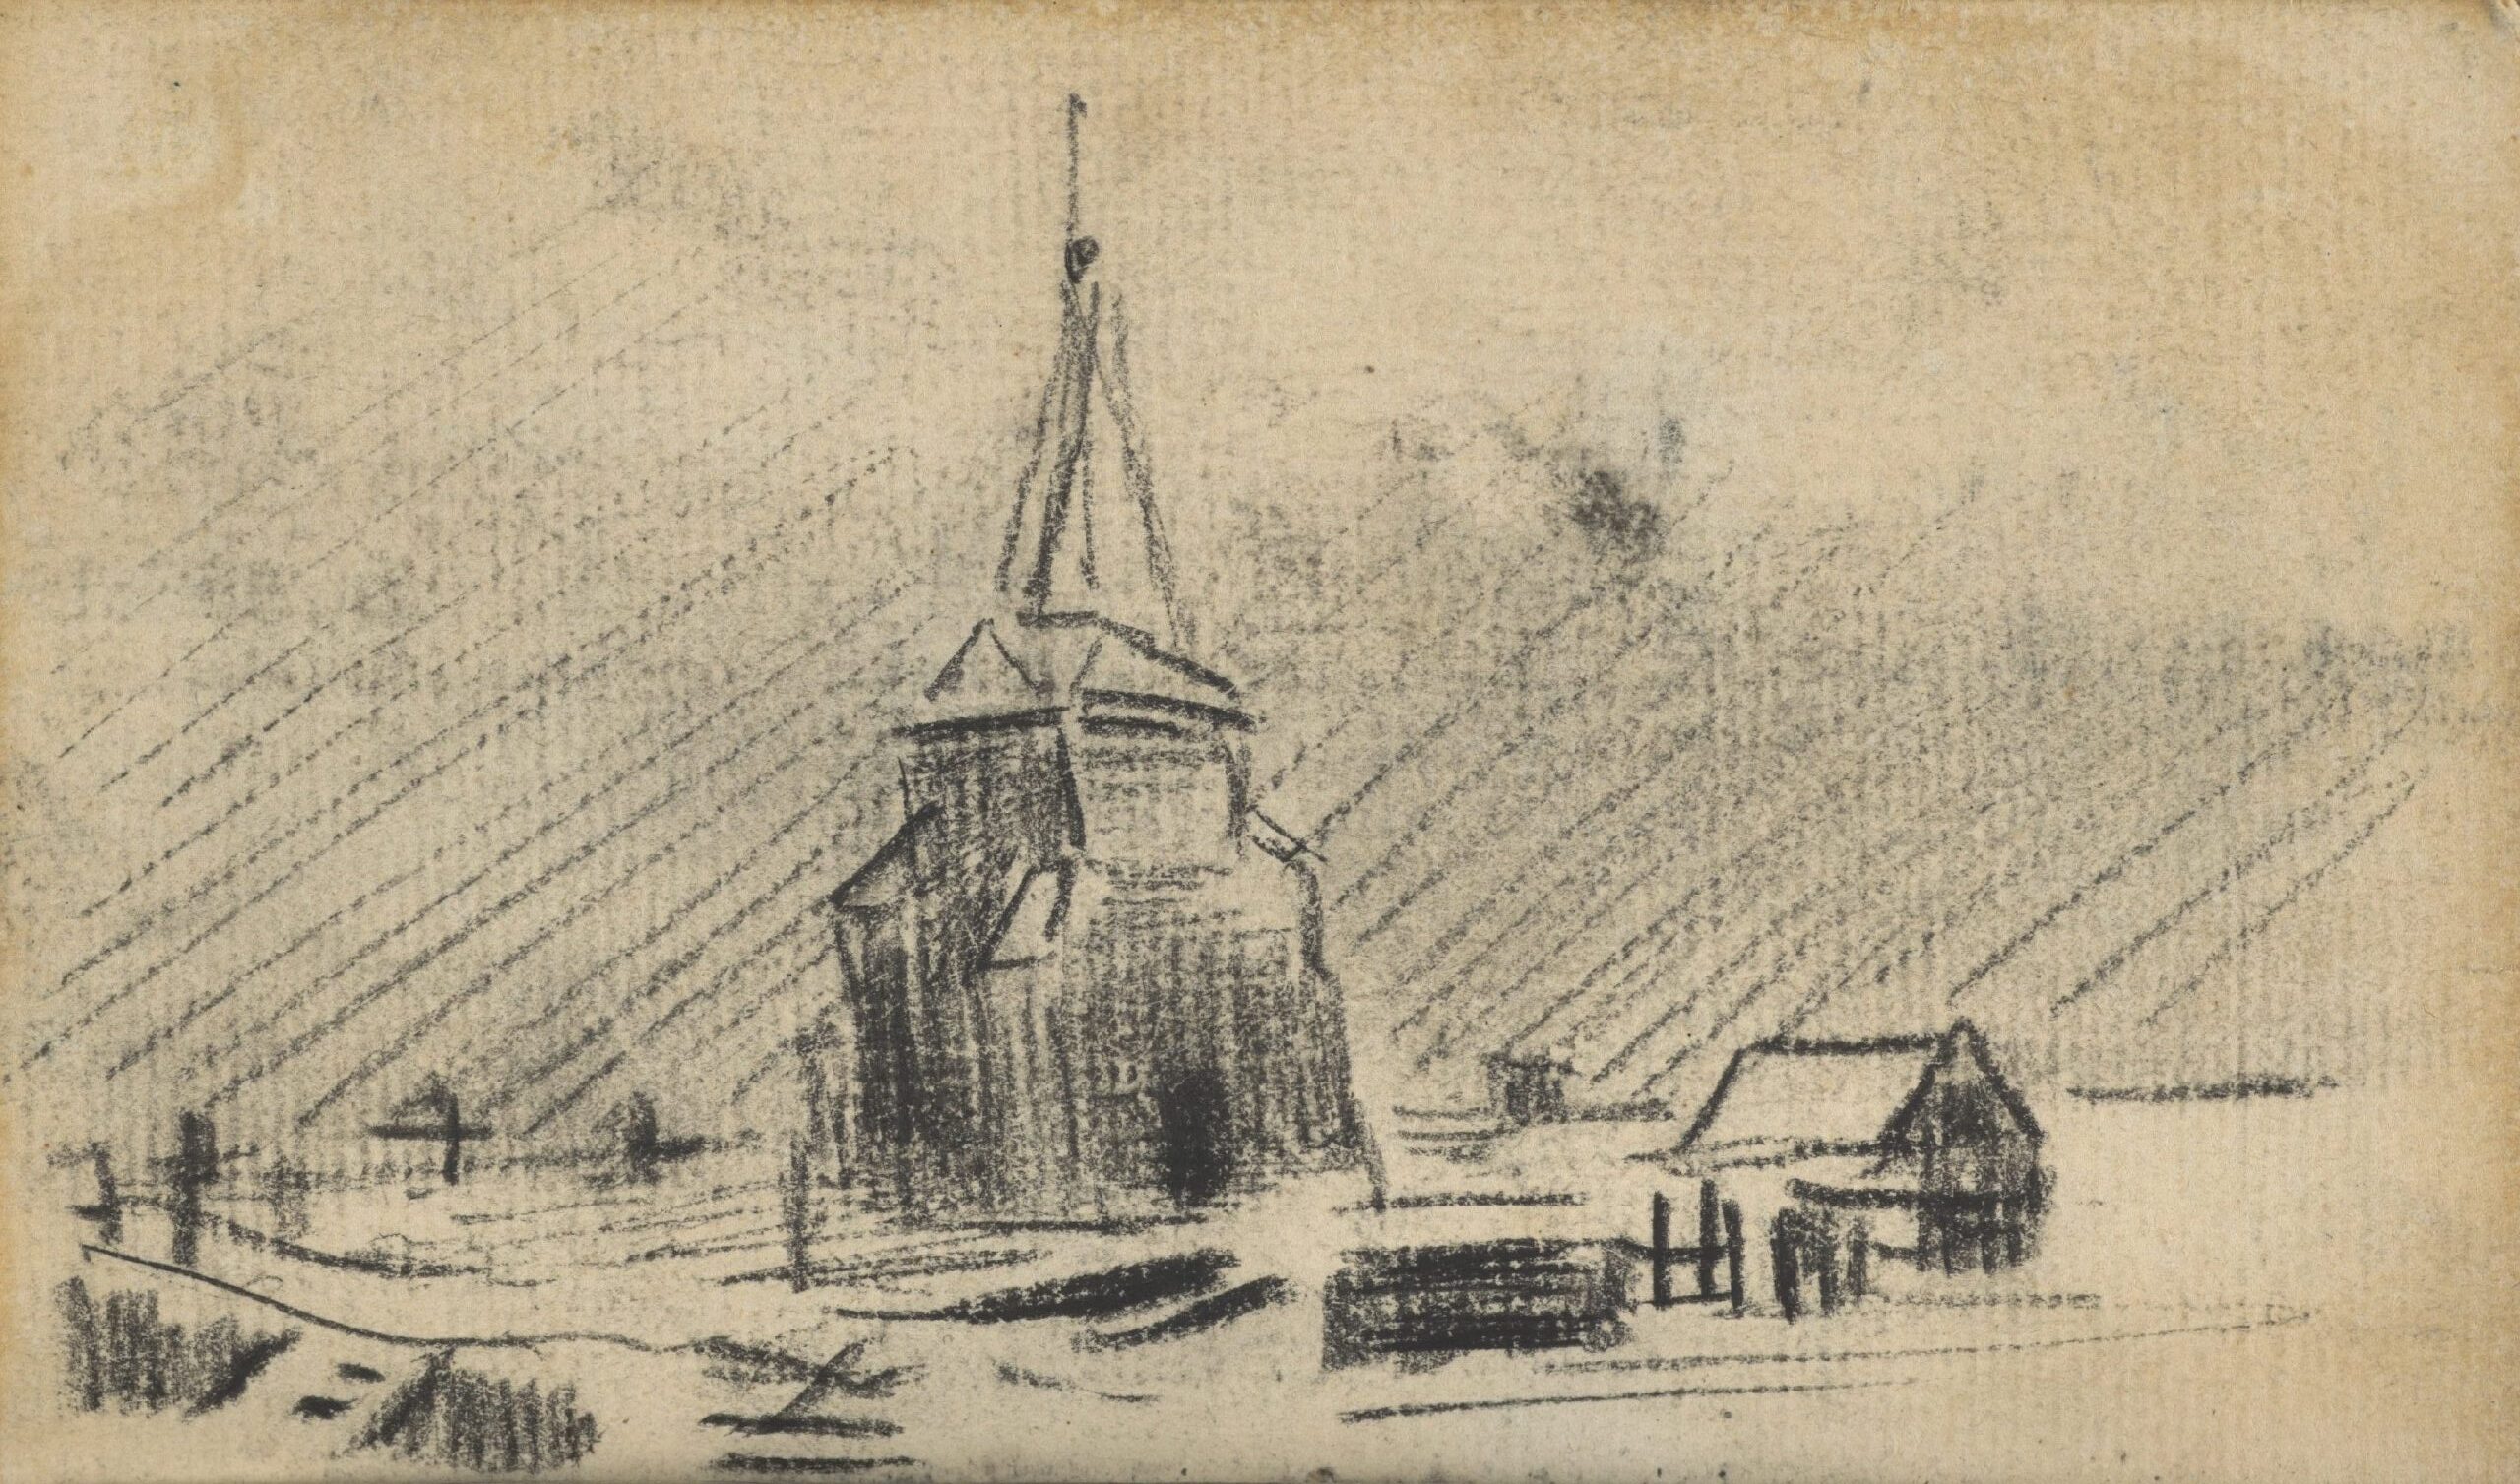 De oude kerktoren in de sneeuw Vincent van Gogh (1853 - 1890), Nuenen, december 1884-maart 1885